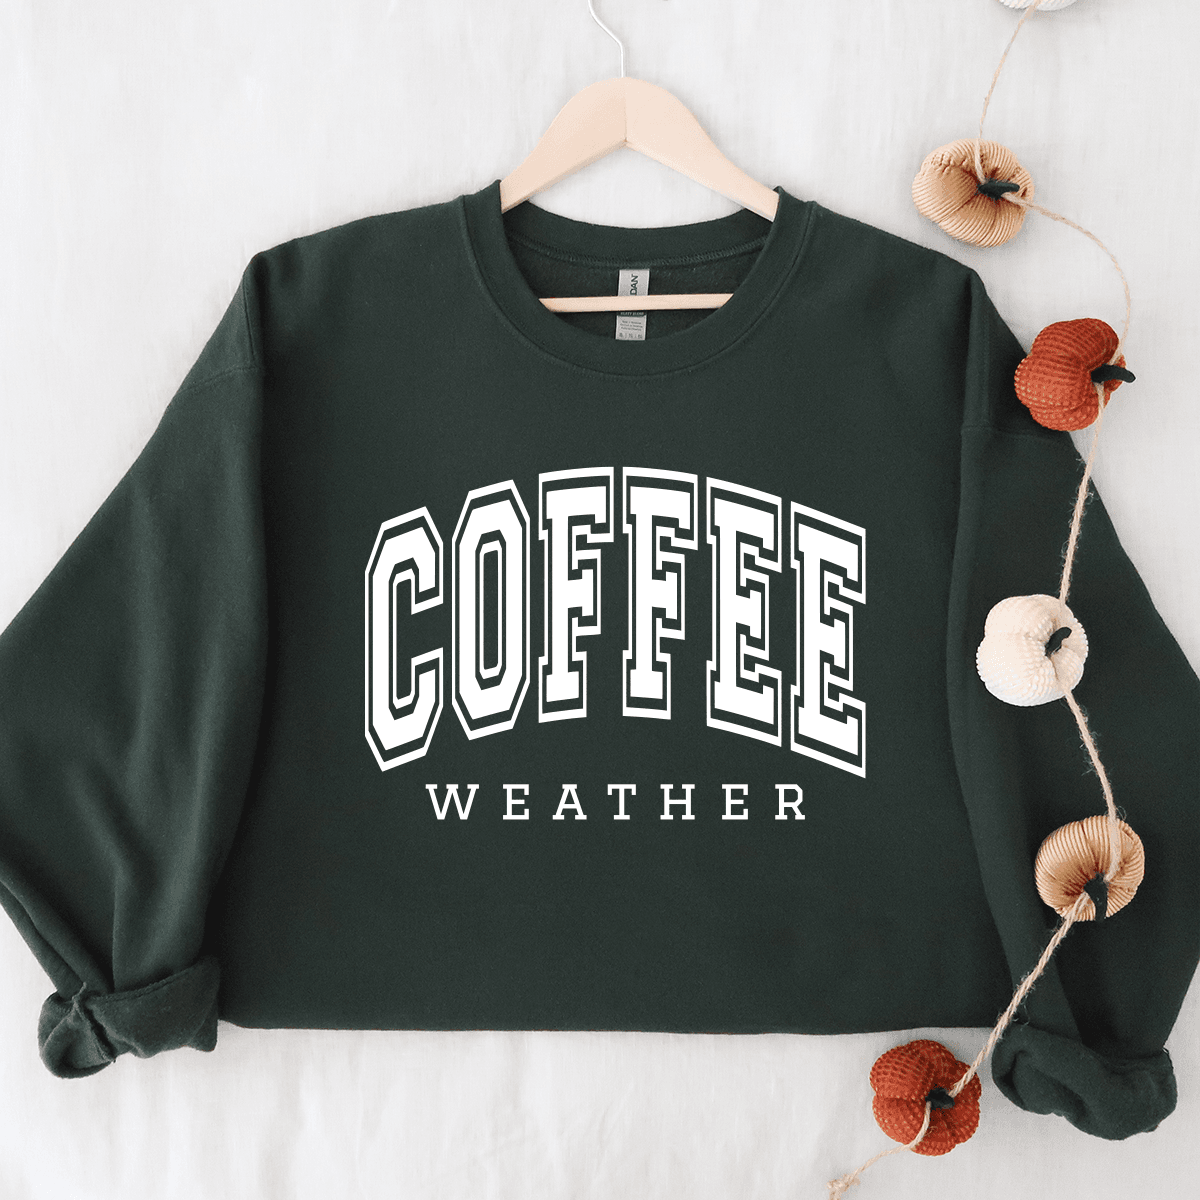 Coffee Weather - Sweatshirt